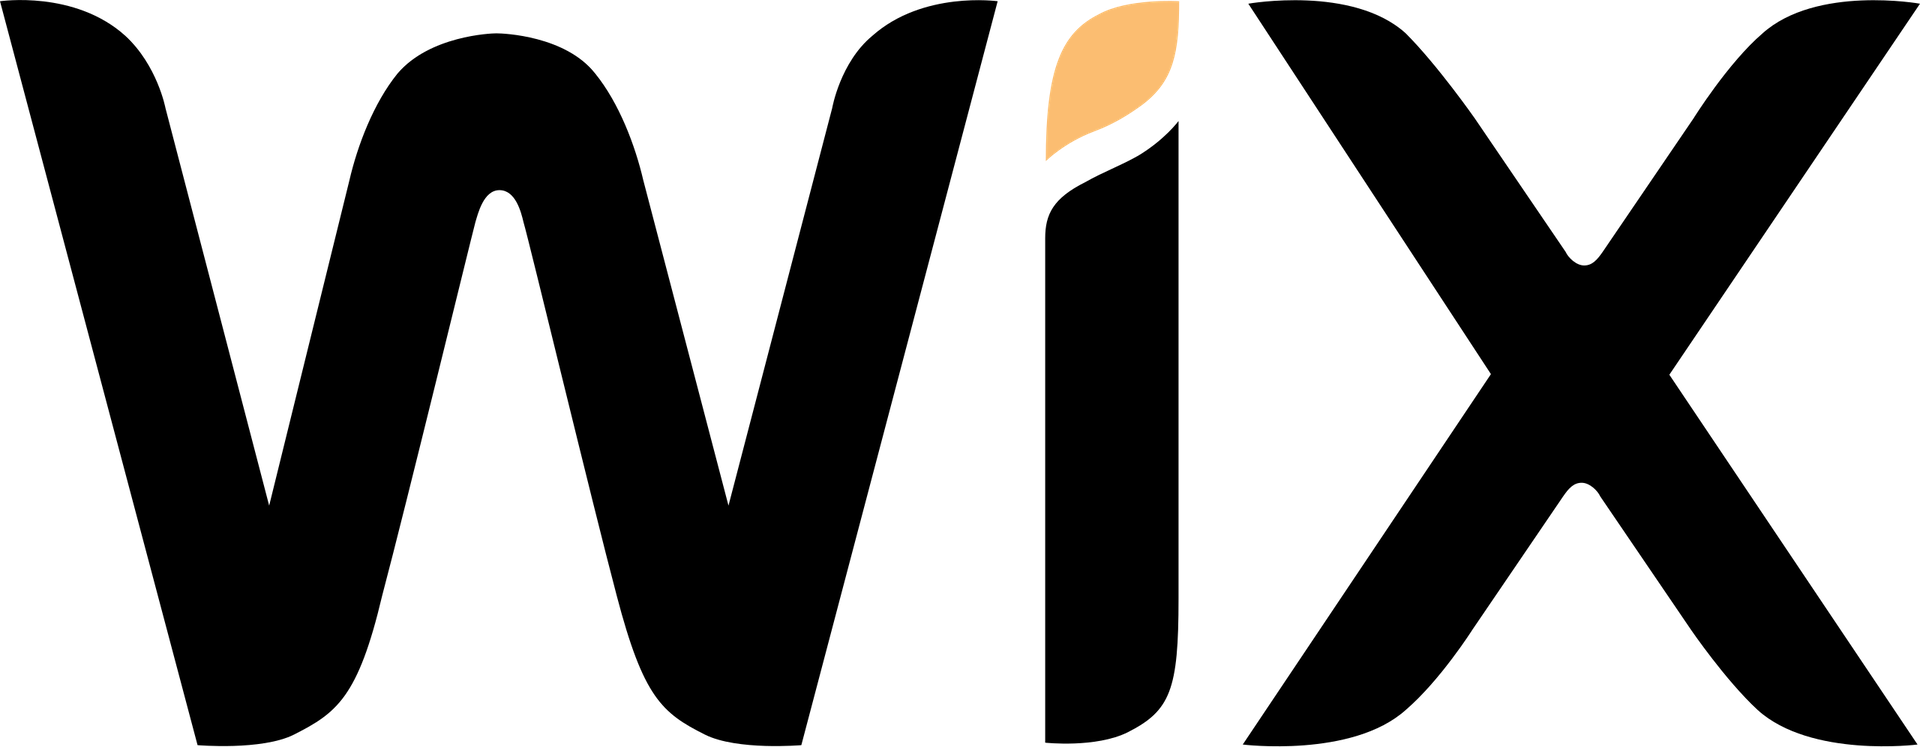 Image of Wix logo.